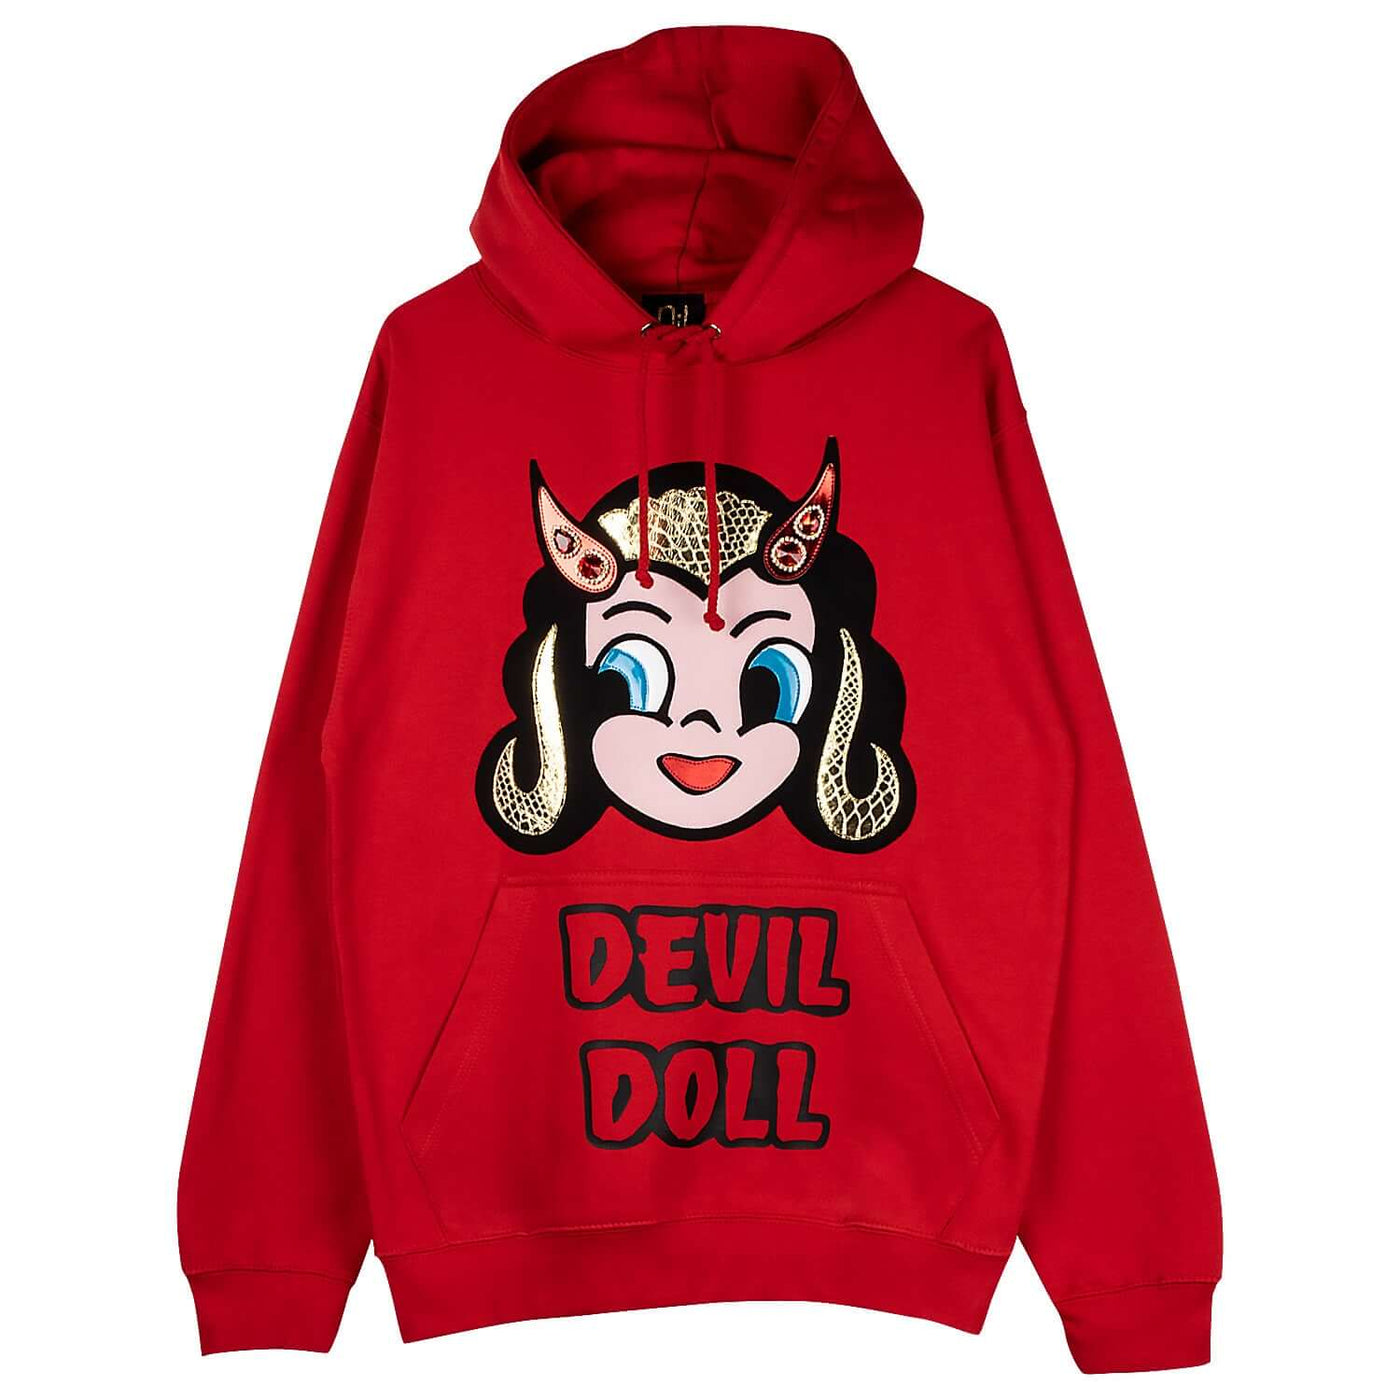 Hoodie "Devil Doll" - red